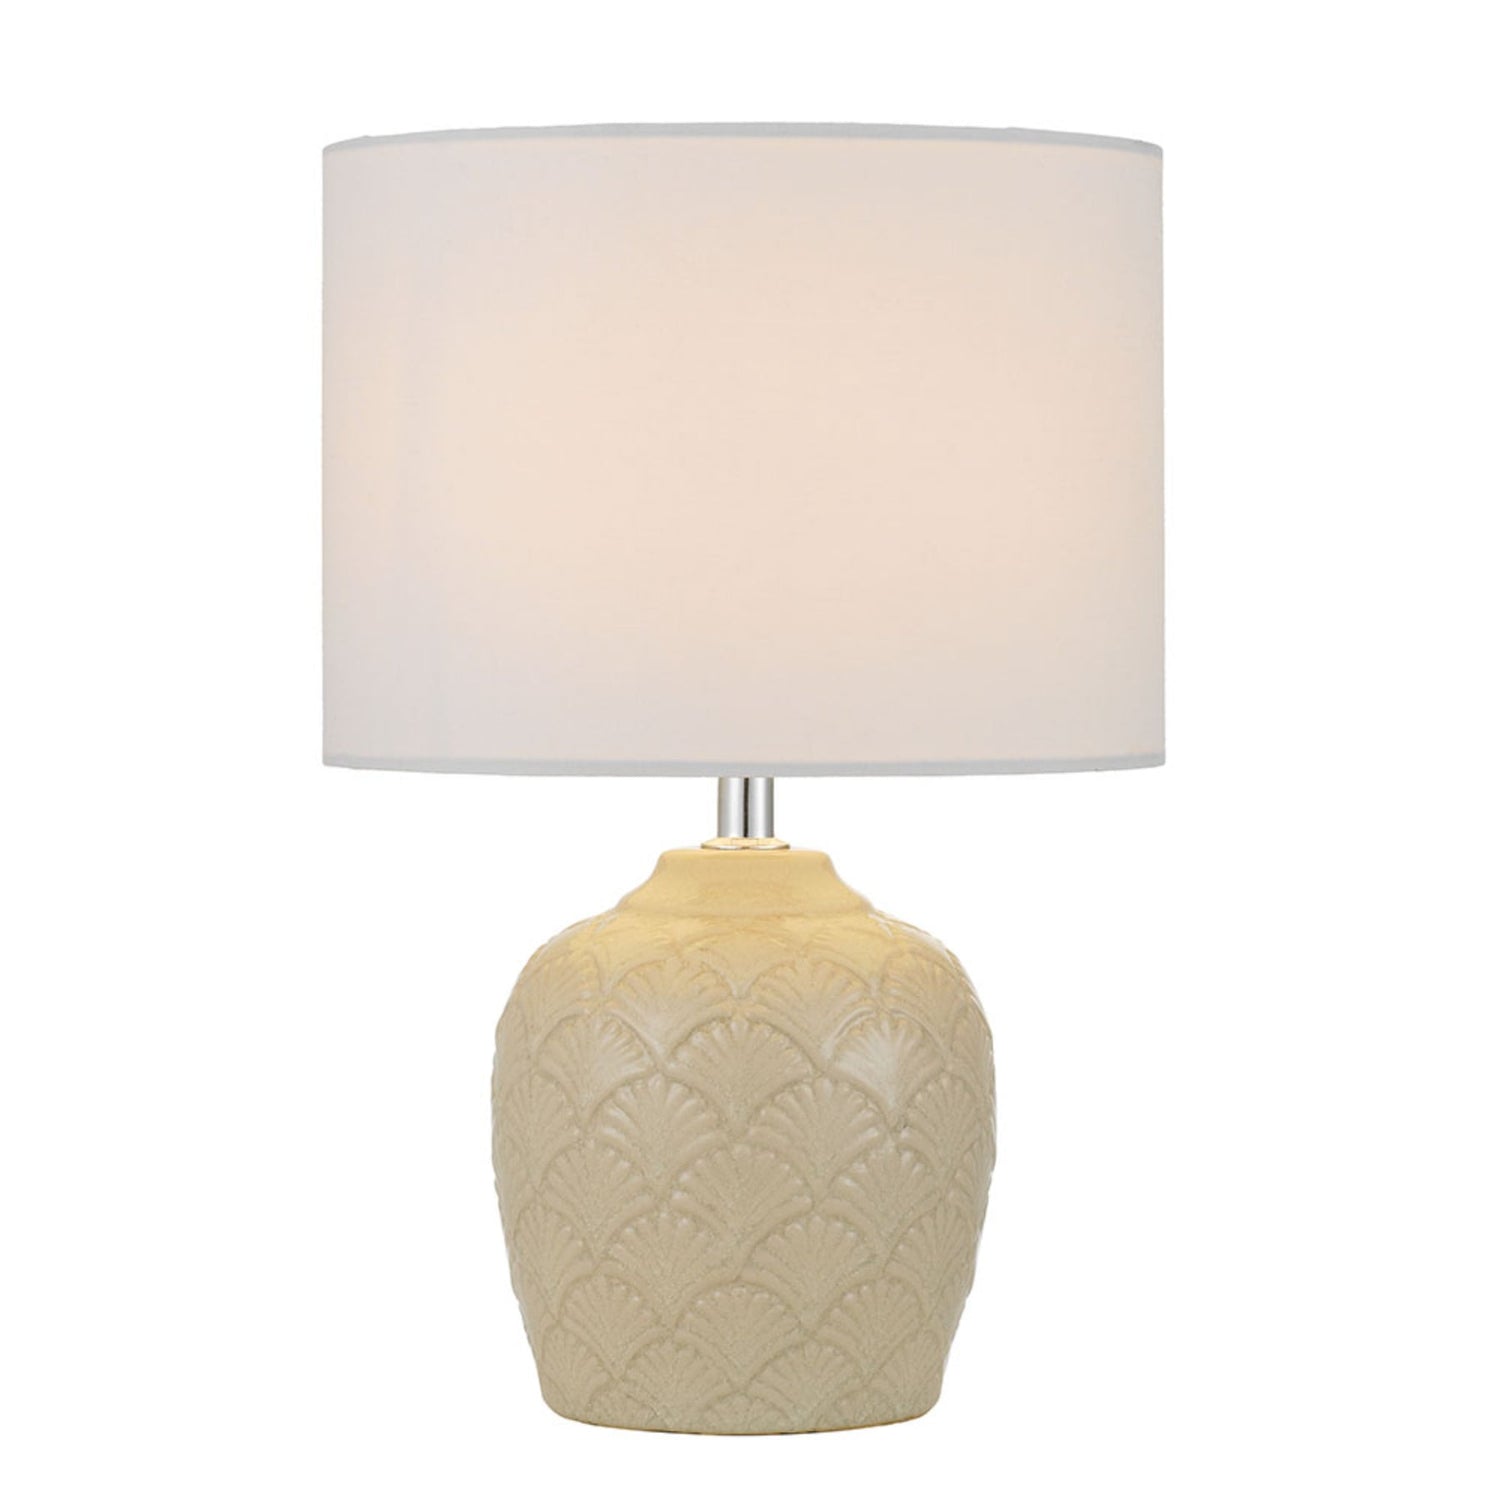 Indo Cream and White Ceramic Table Lamp